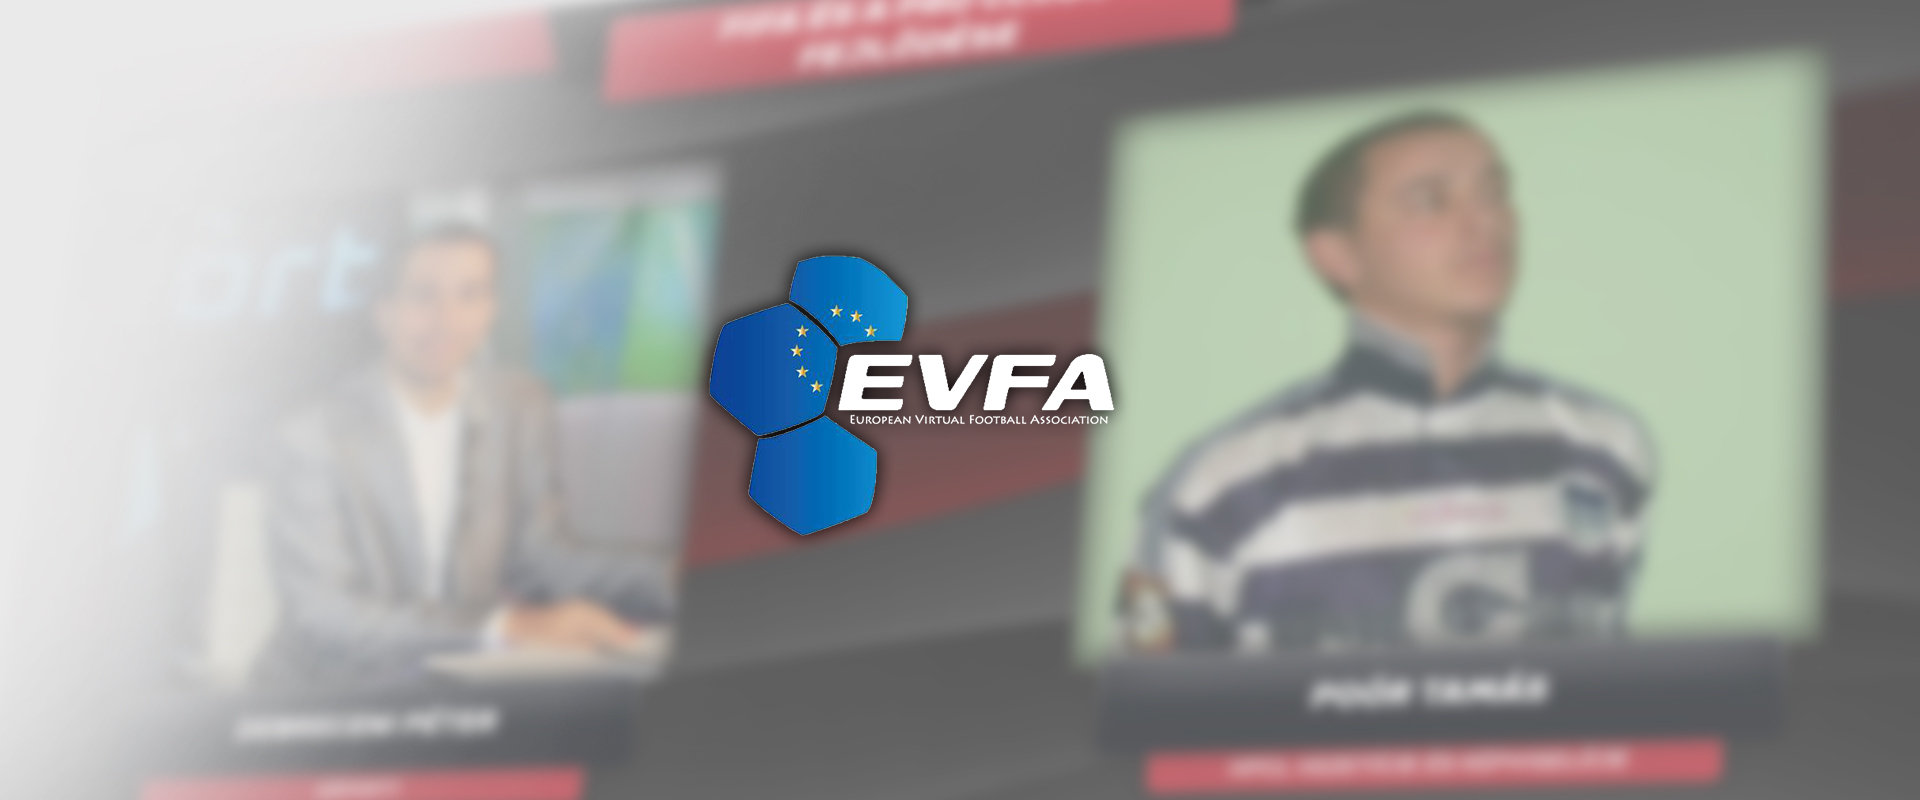 FIFA18: Megalakult az EVFA, de mit is jelent ez pontosan?